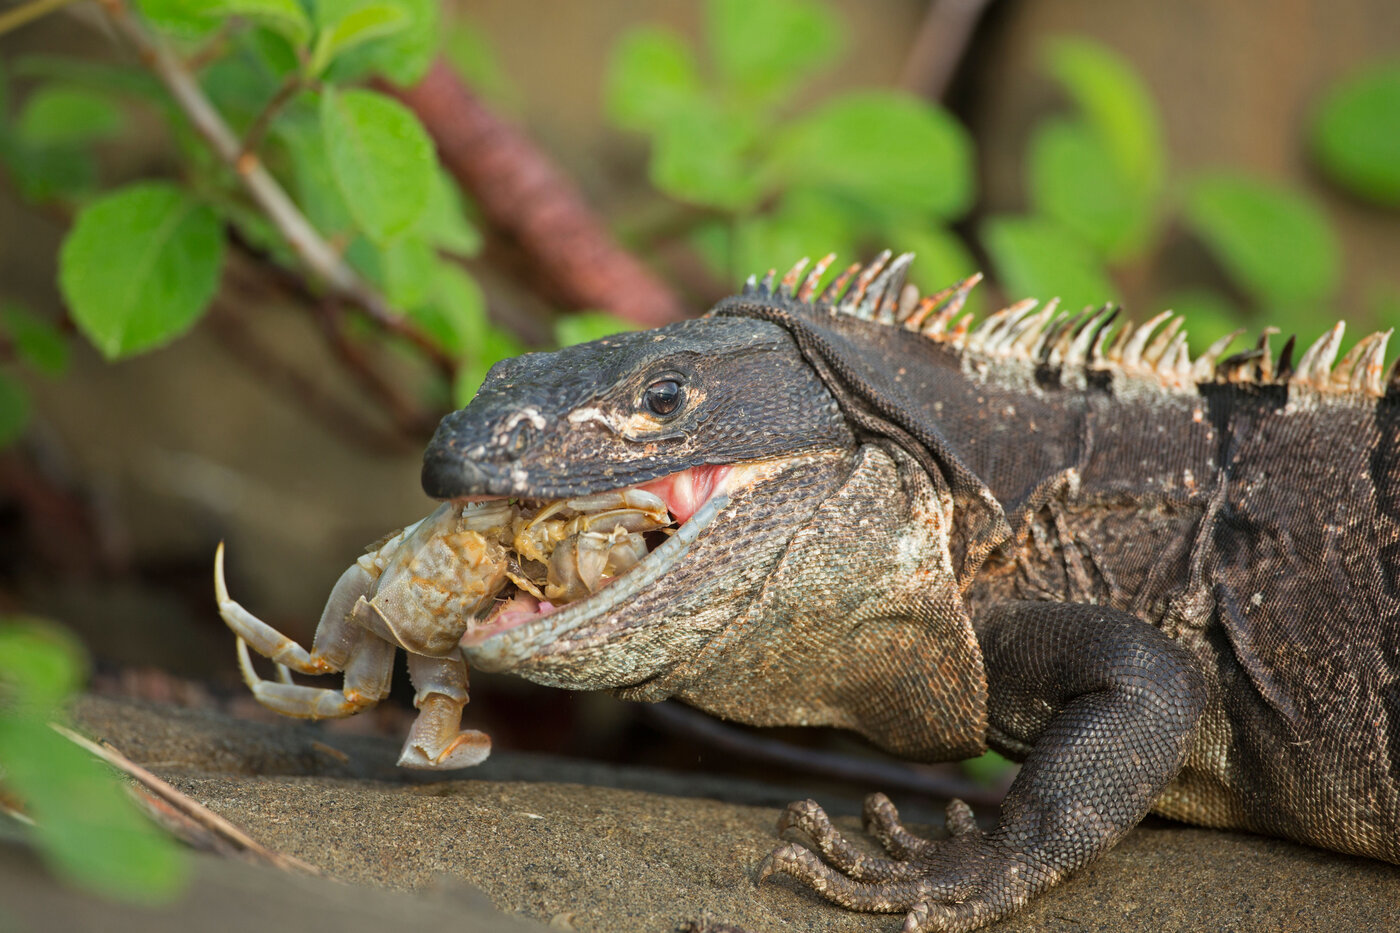 Black Spiny tailed iguana eating a crab | © John Cancalosi / Alamy Stock Photo